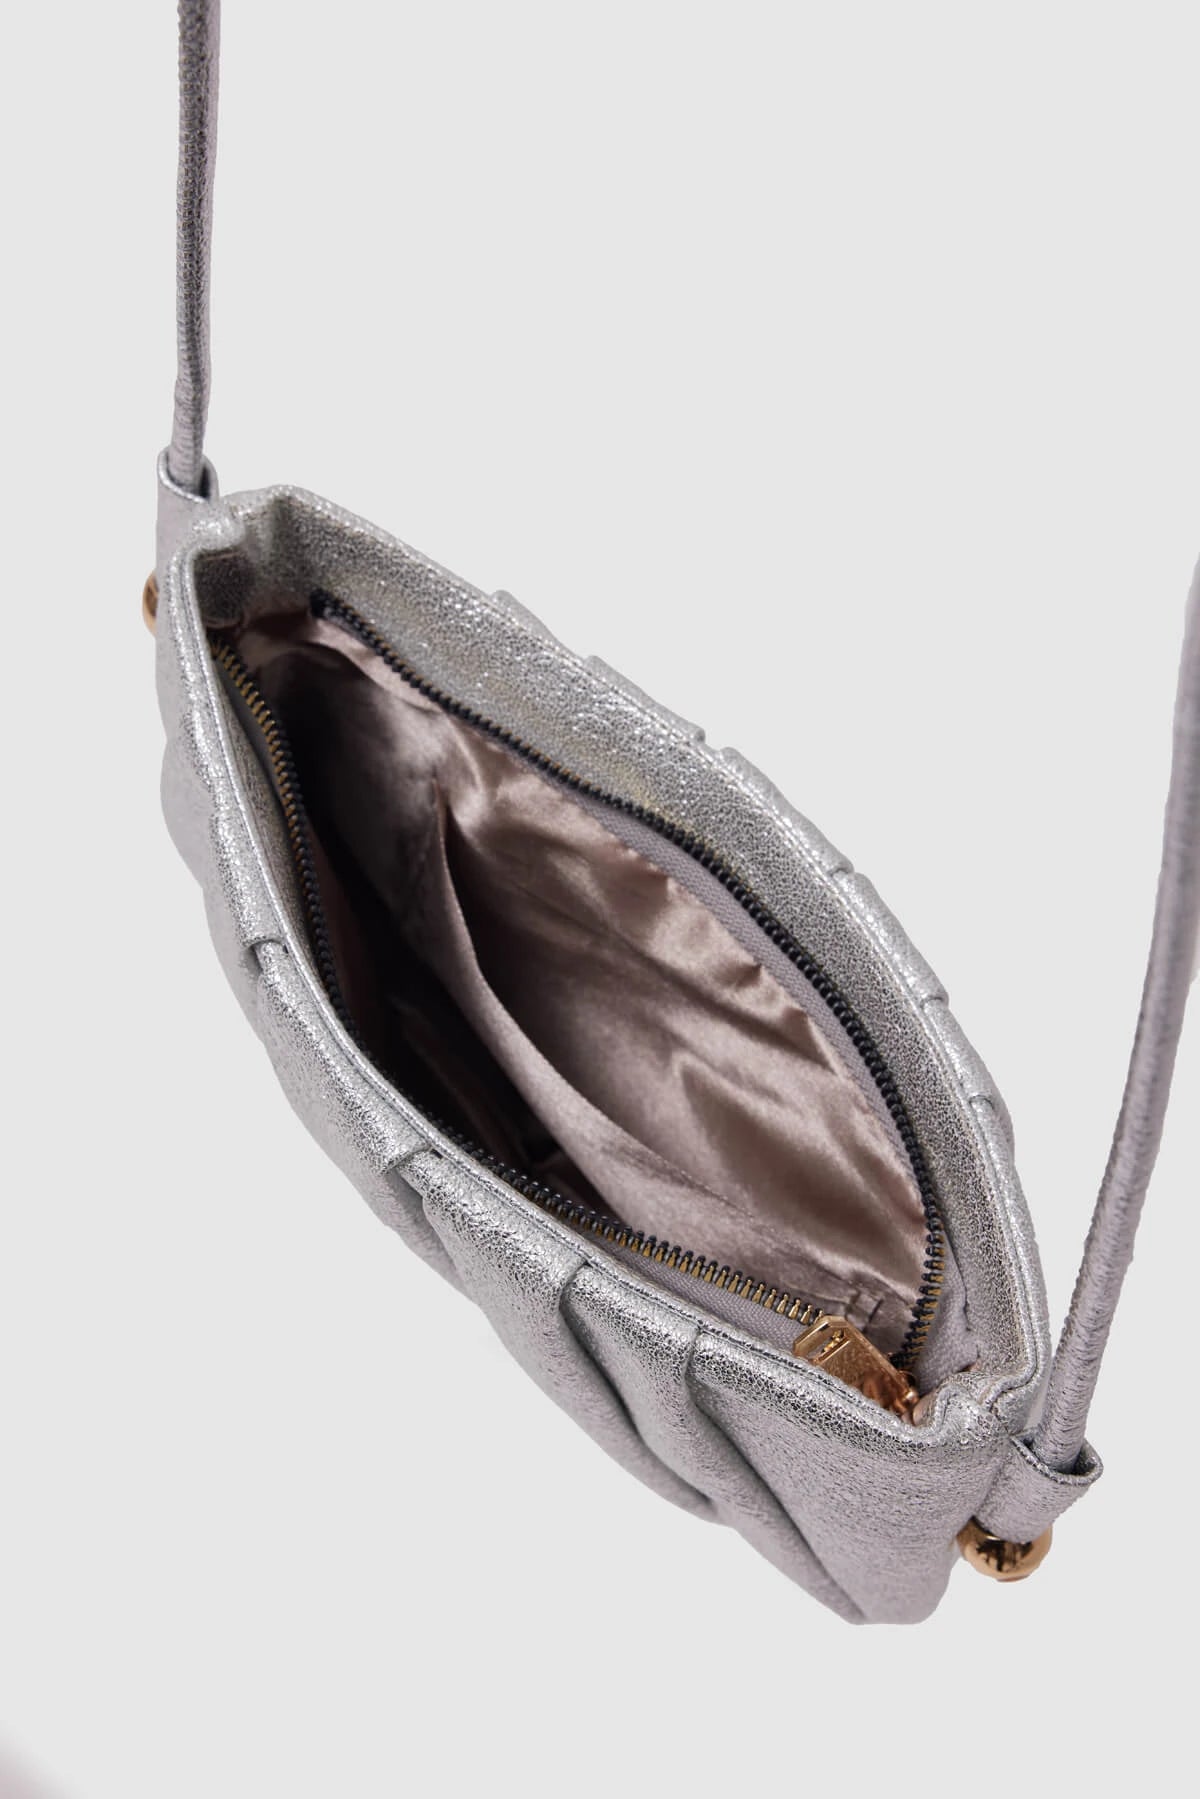 Metallic Long Strap Shoulder Bag shoulder bag LUNARITY GARAGE   